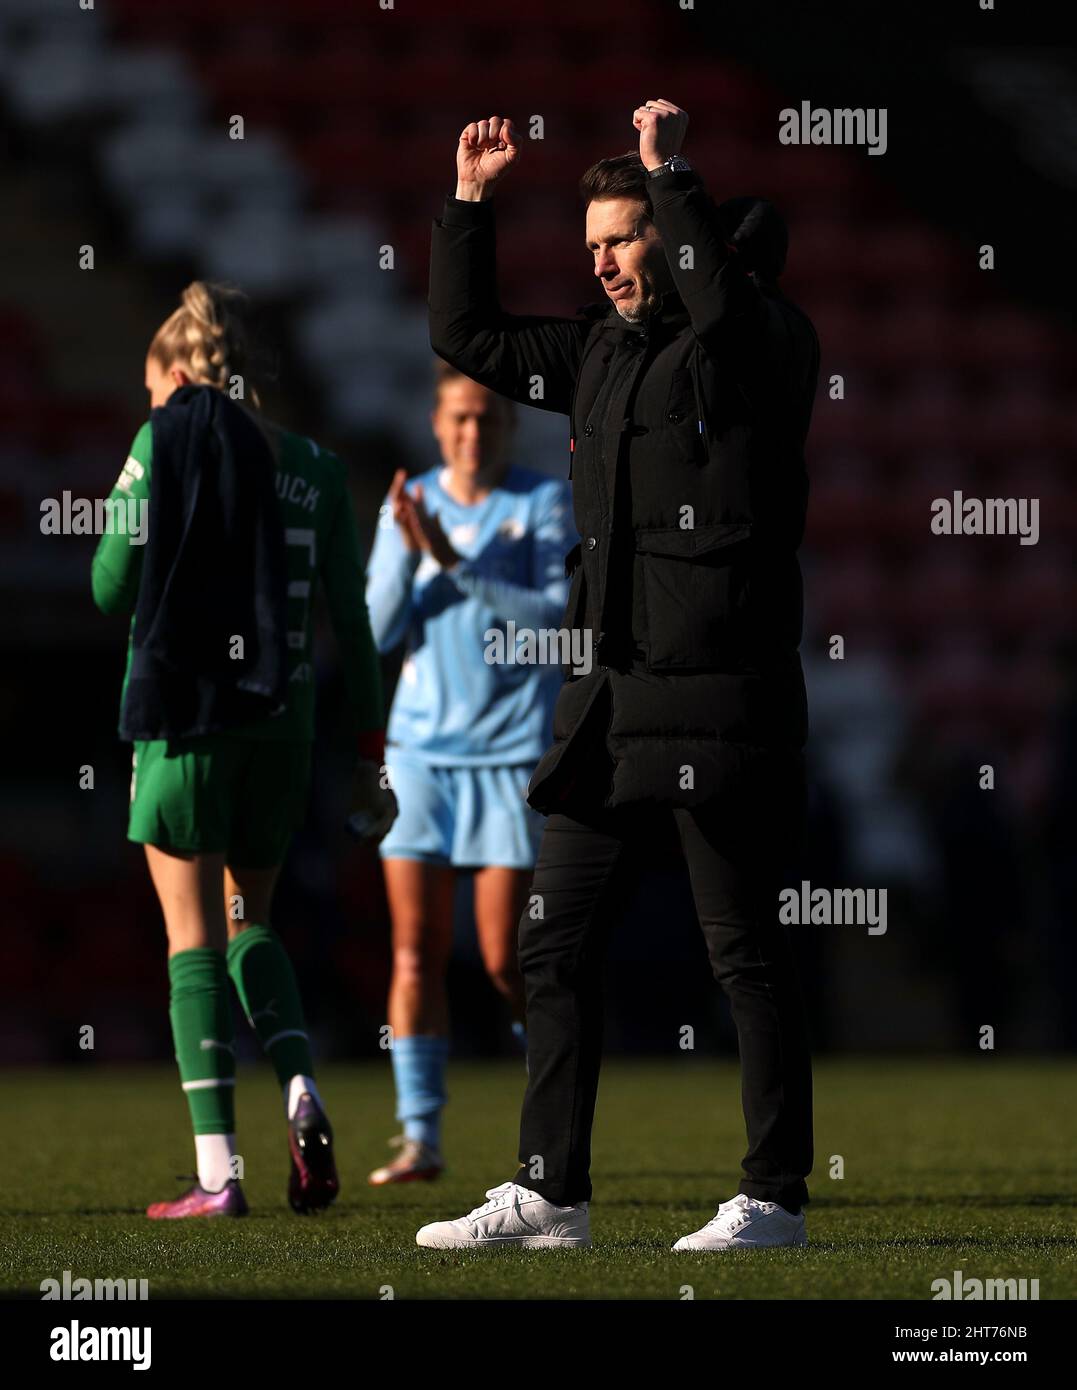 Gareth Taylor, directeur de Manchester City, célèbre après le cinquième match de la Vitality Women's FA Cup au Leigh Sports Village de Manchester. Date de la photo: Dimanche 27 février 2022. Banque D'Images